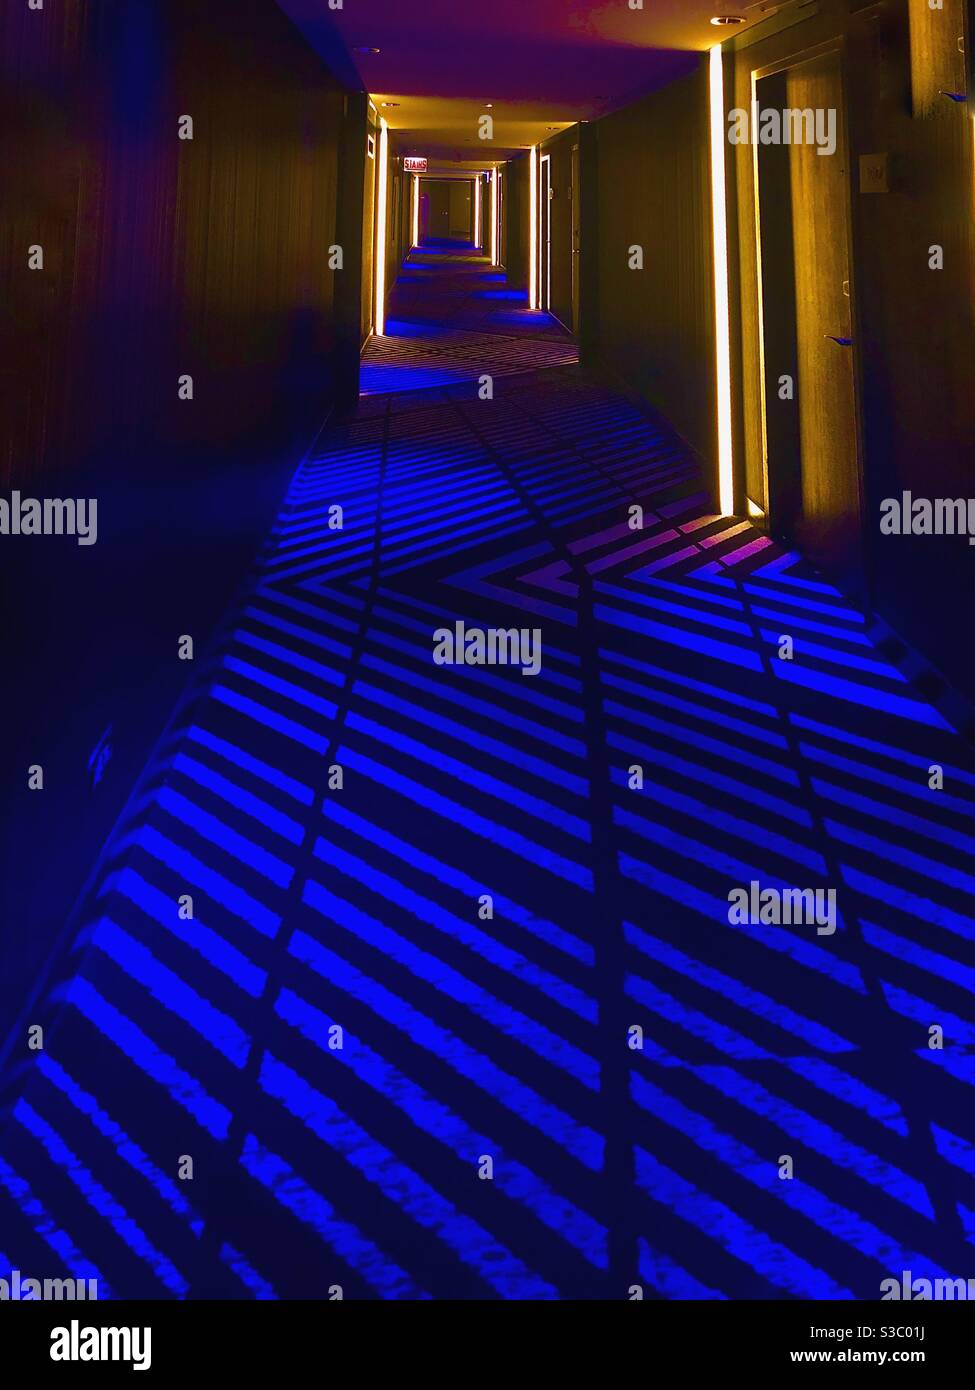 Una ilusión fabulosa creada con una iluminación especial en un pasillo del hotel W Chicago - Lakeshore. Foto de stock